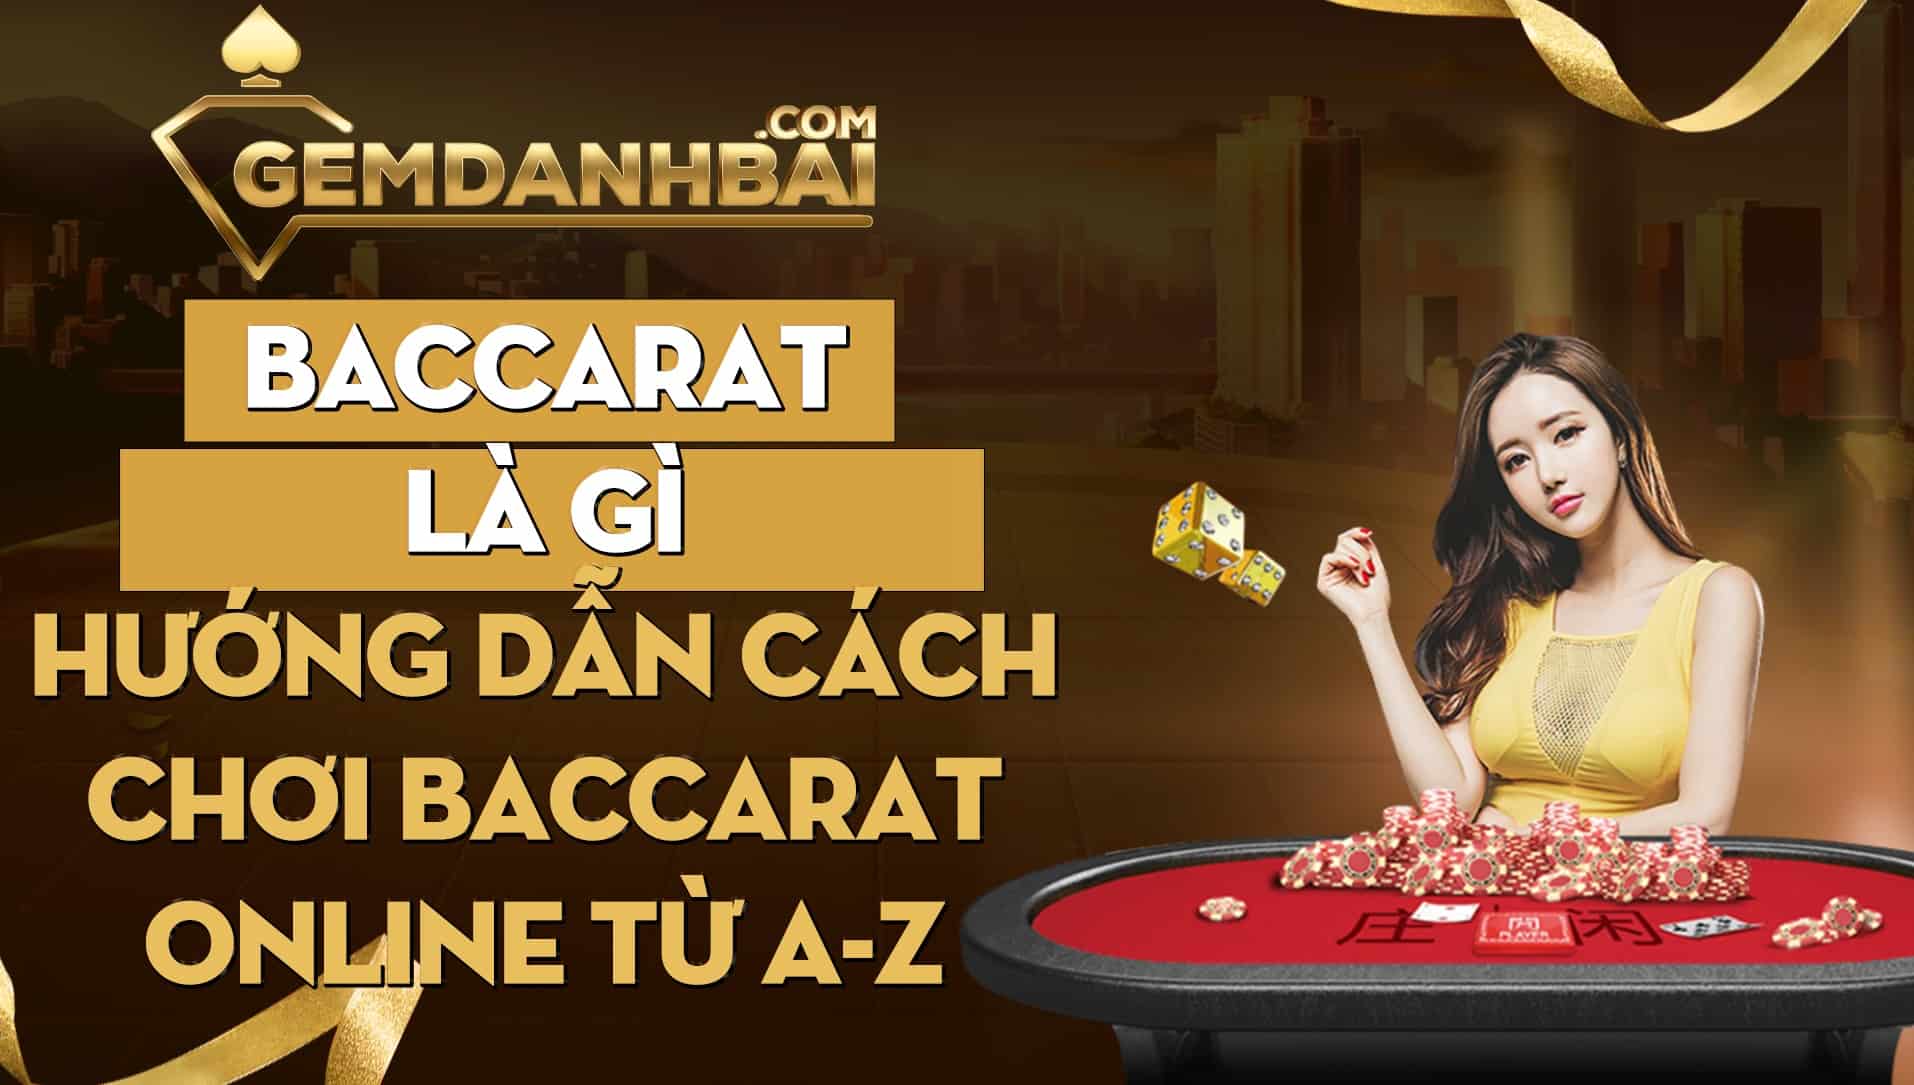 Baccarat là gì - Hướng dẫn cách chơi baccarat online từ A-Z